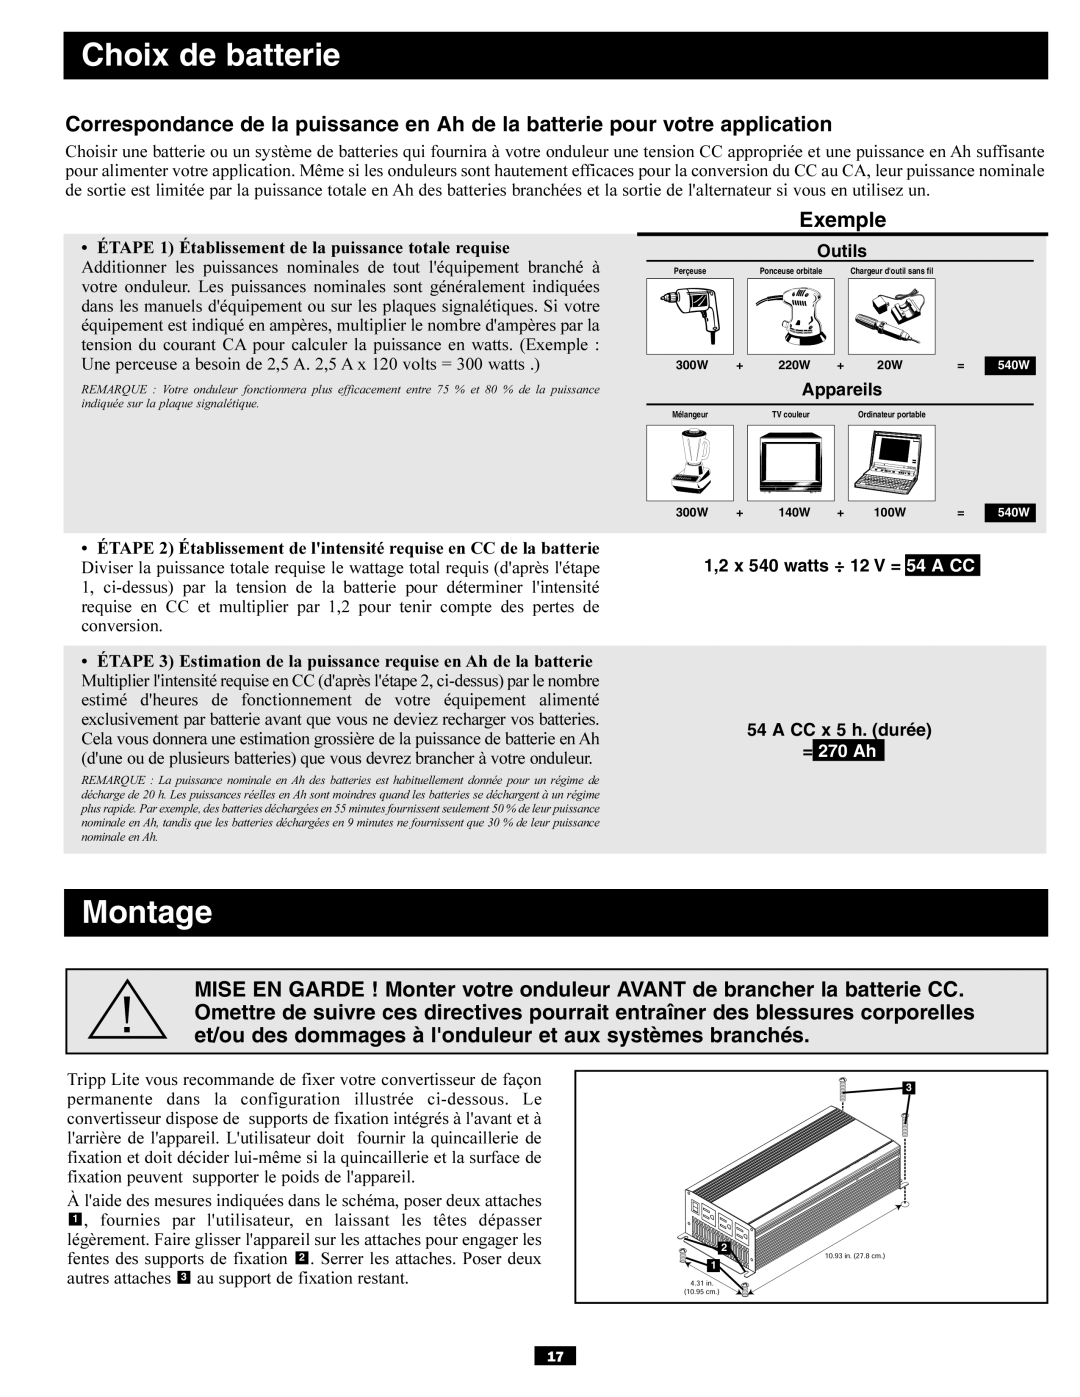 Tripp Lite PV700HF owner manual Choix de batterie, Montage 